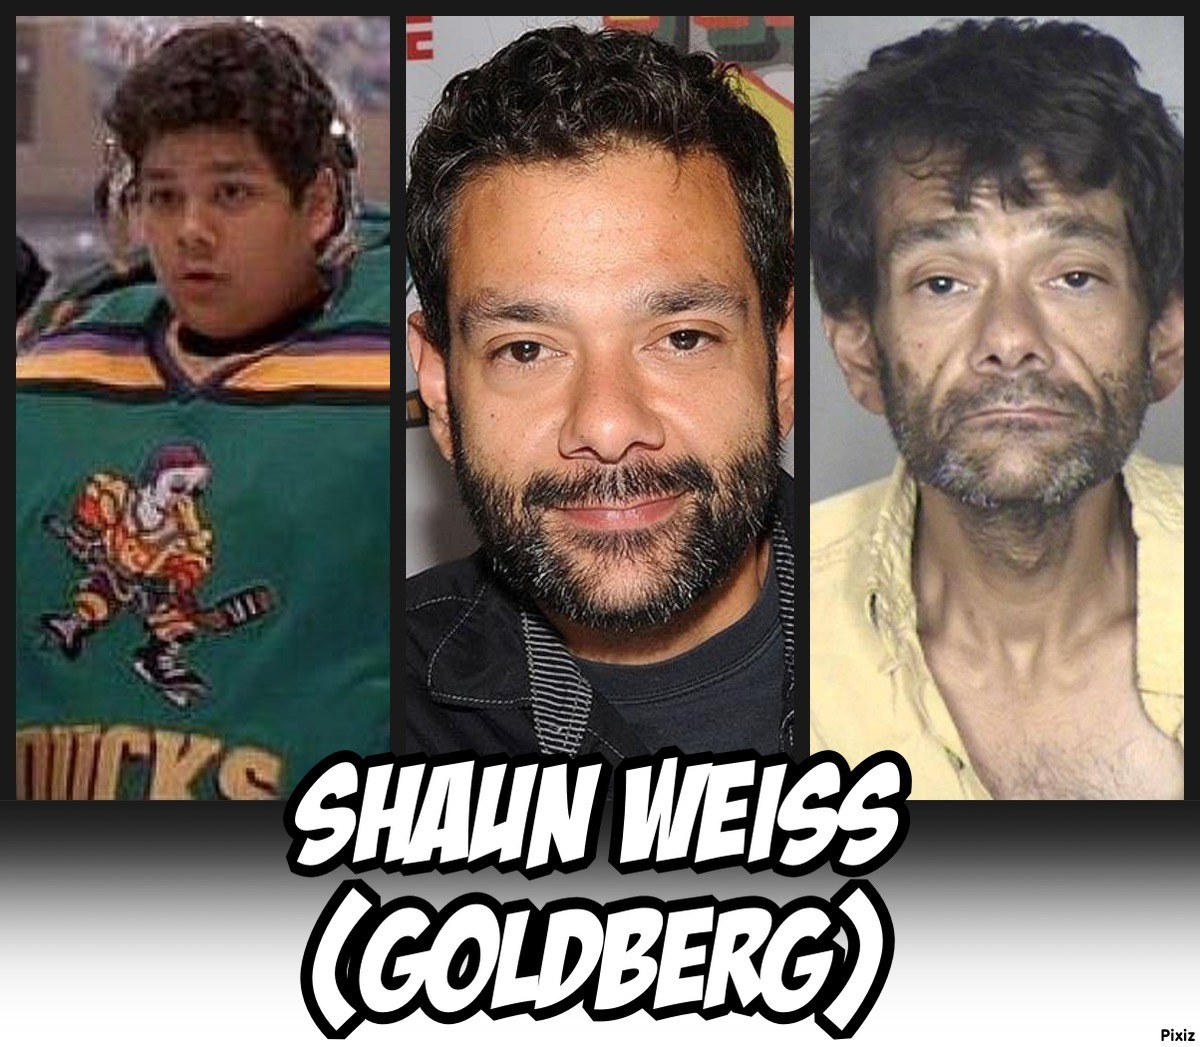 Shaun Weiss, el actor que interpret a Goldberg en la pelcula The...